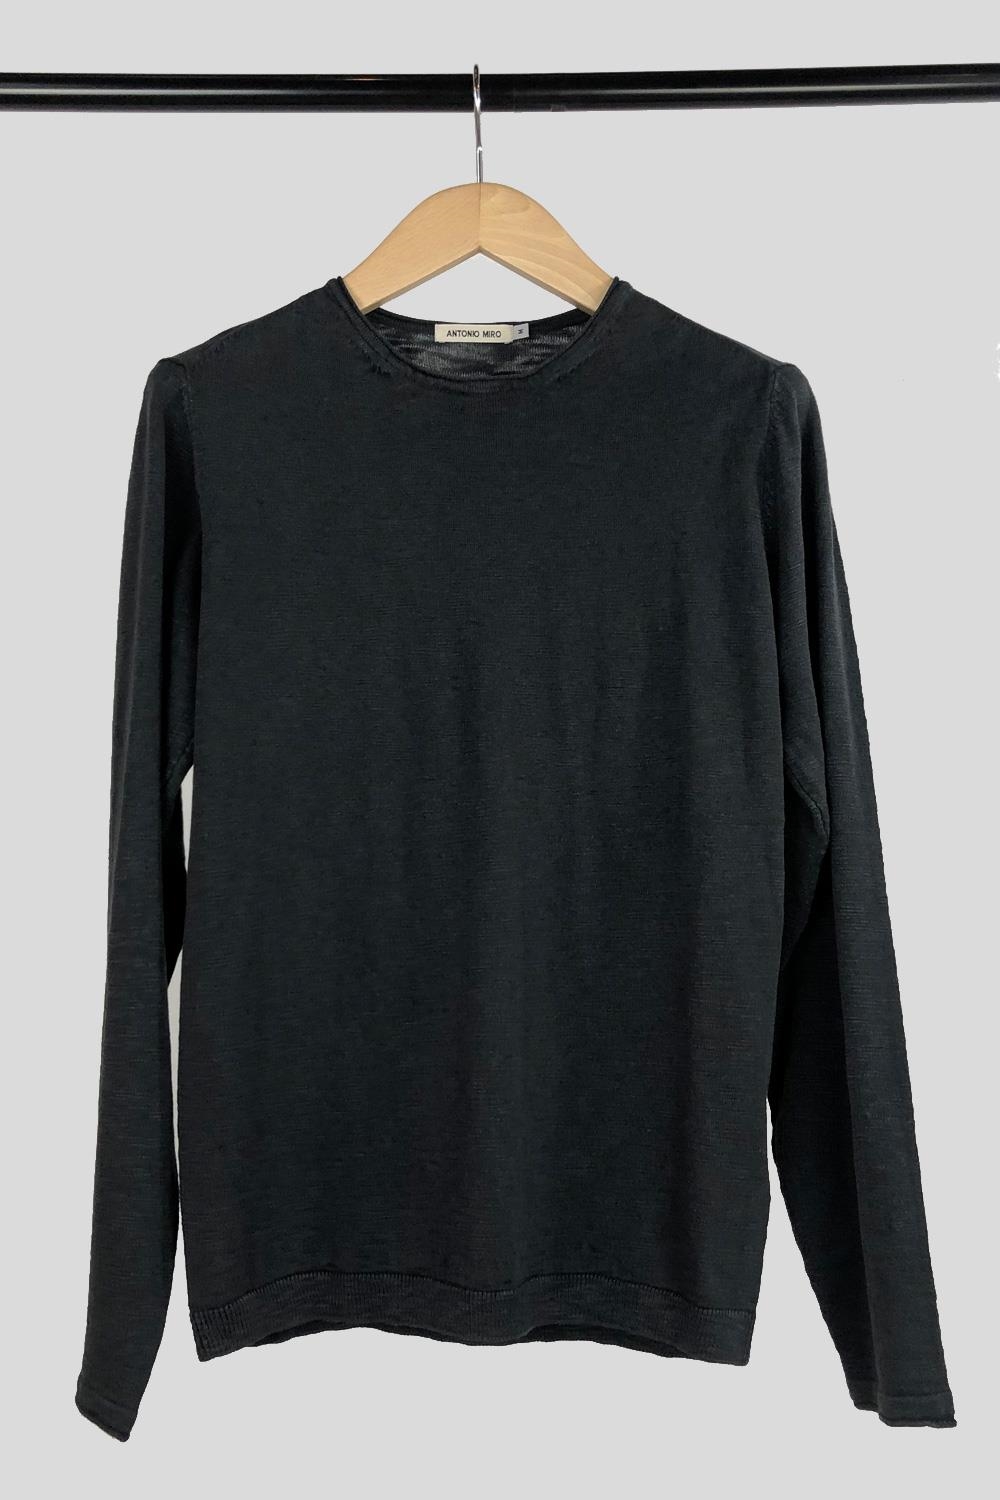 Jersey negro cuello redondo en algodón | 1625HJCR00/042